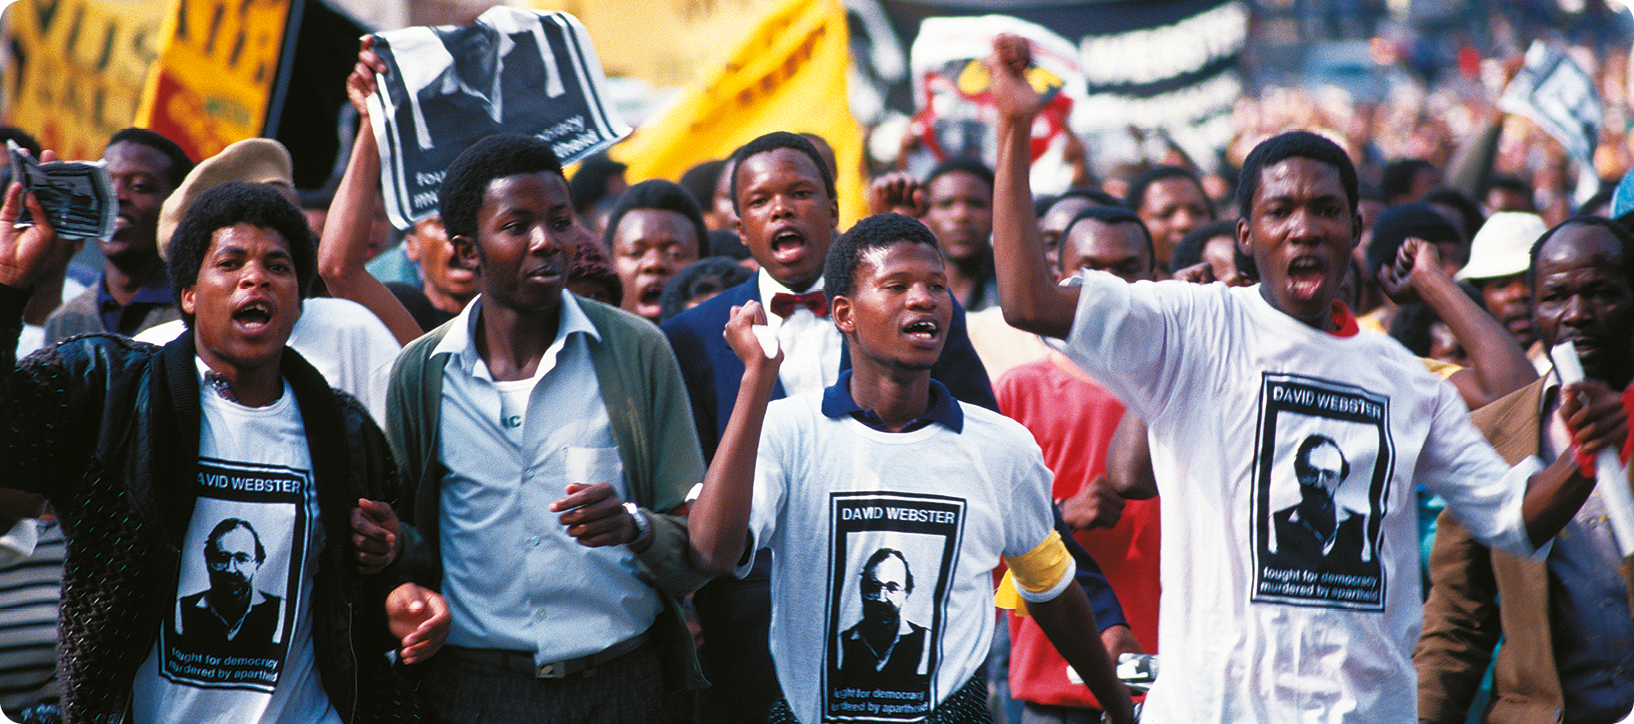 Fotografia. No primeiro plano, jovens negros usando uma camisa com a fotografia de um homem. Ao fundo, pessoas estão em uma rua carregando cartazes e faixas.